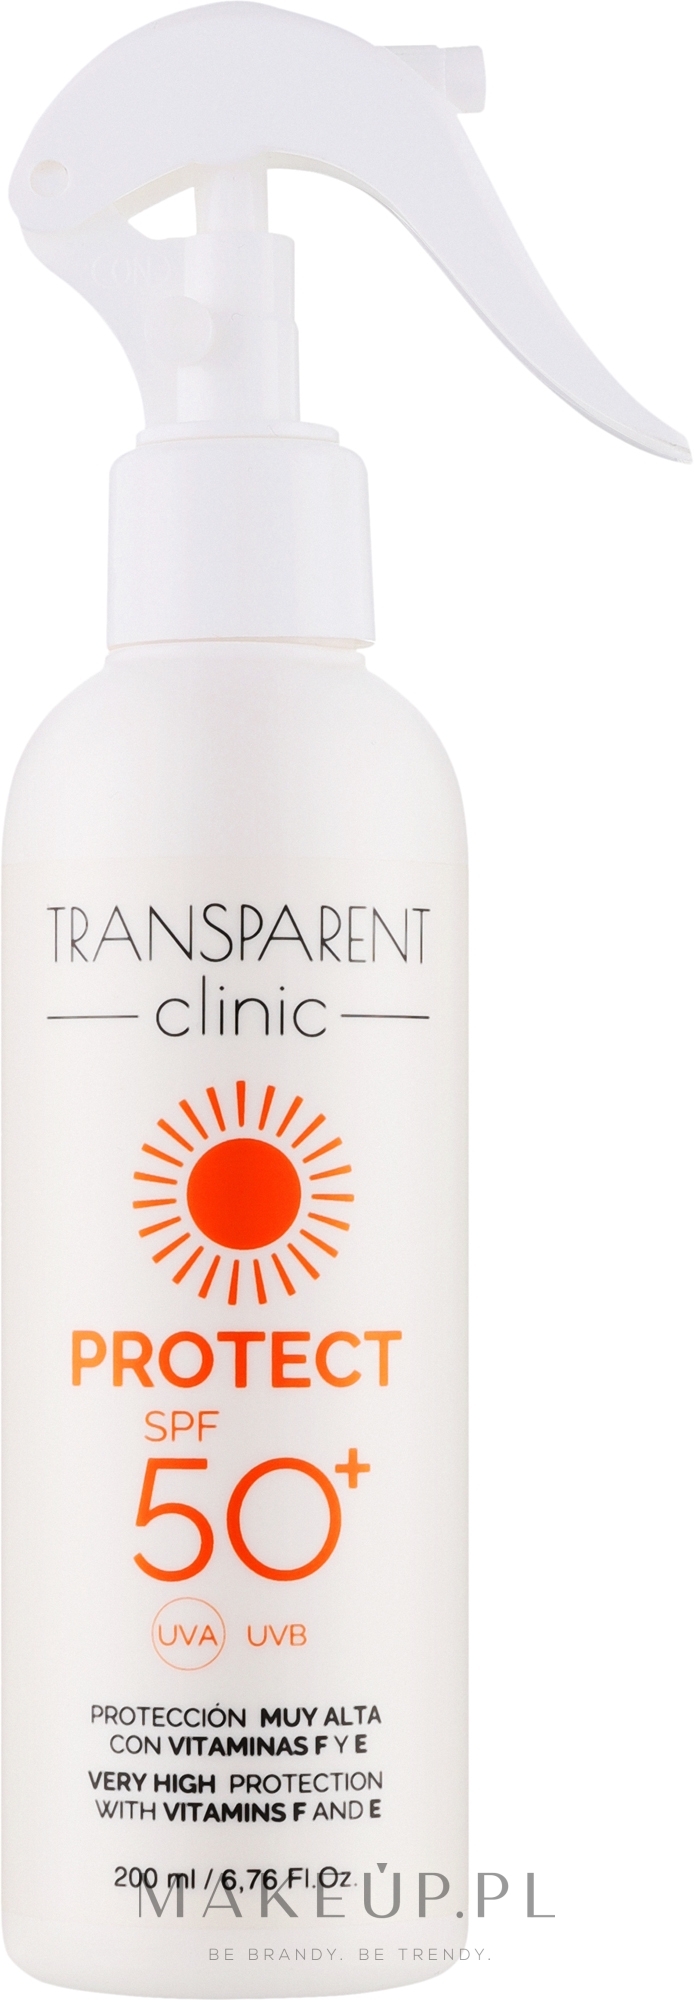 Spray do ciała z filtrem przeciwsłonecznym - Transparent Clinic Protect SPF50+ — Zdjęcie 200 ml